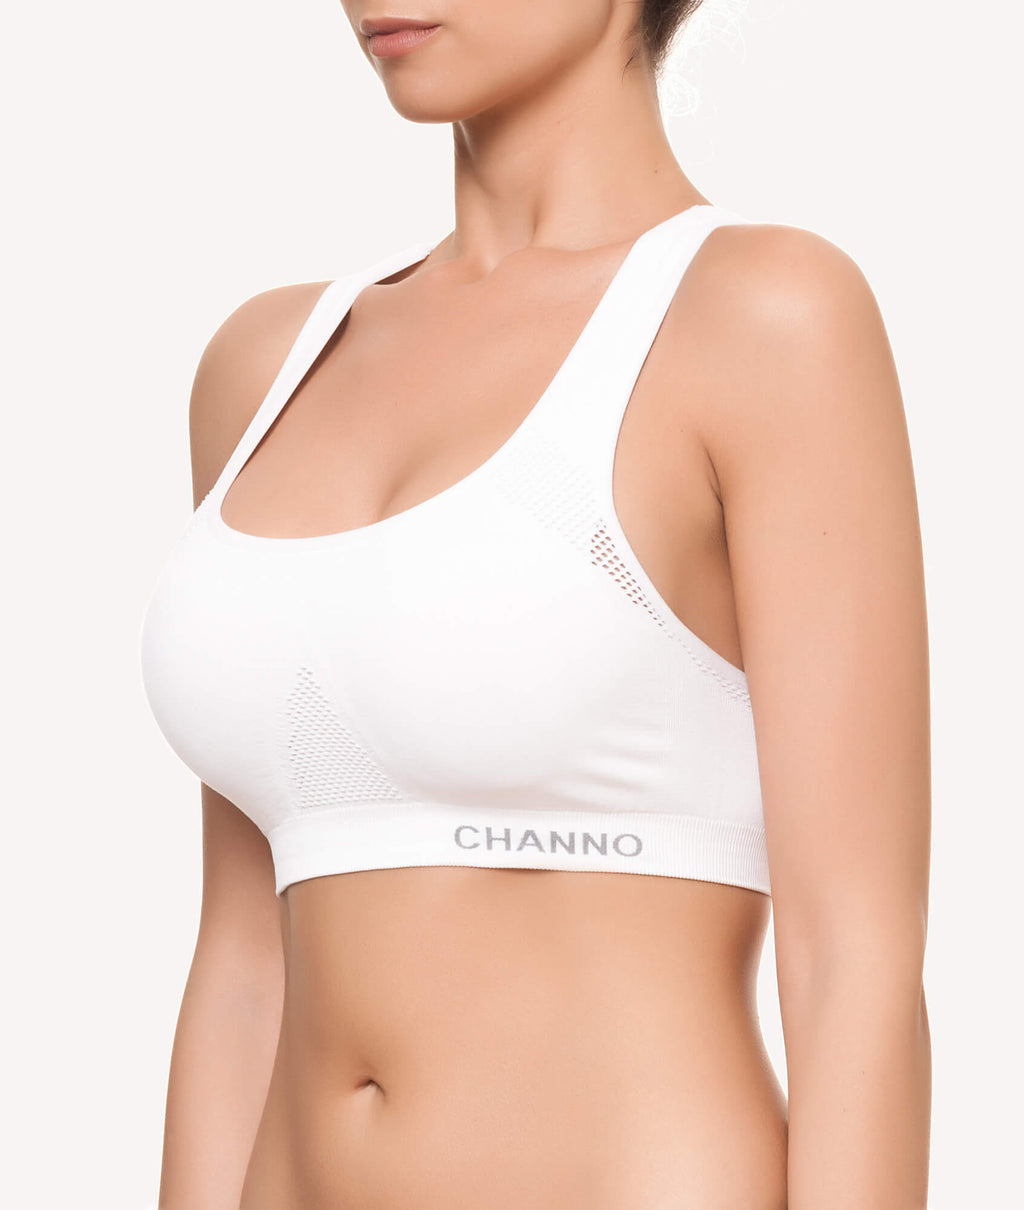 Sujetador deportivo para mujer cuello redondo blanco lateral - CHANNO Woman